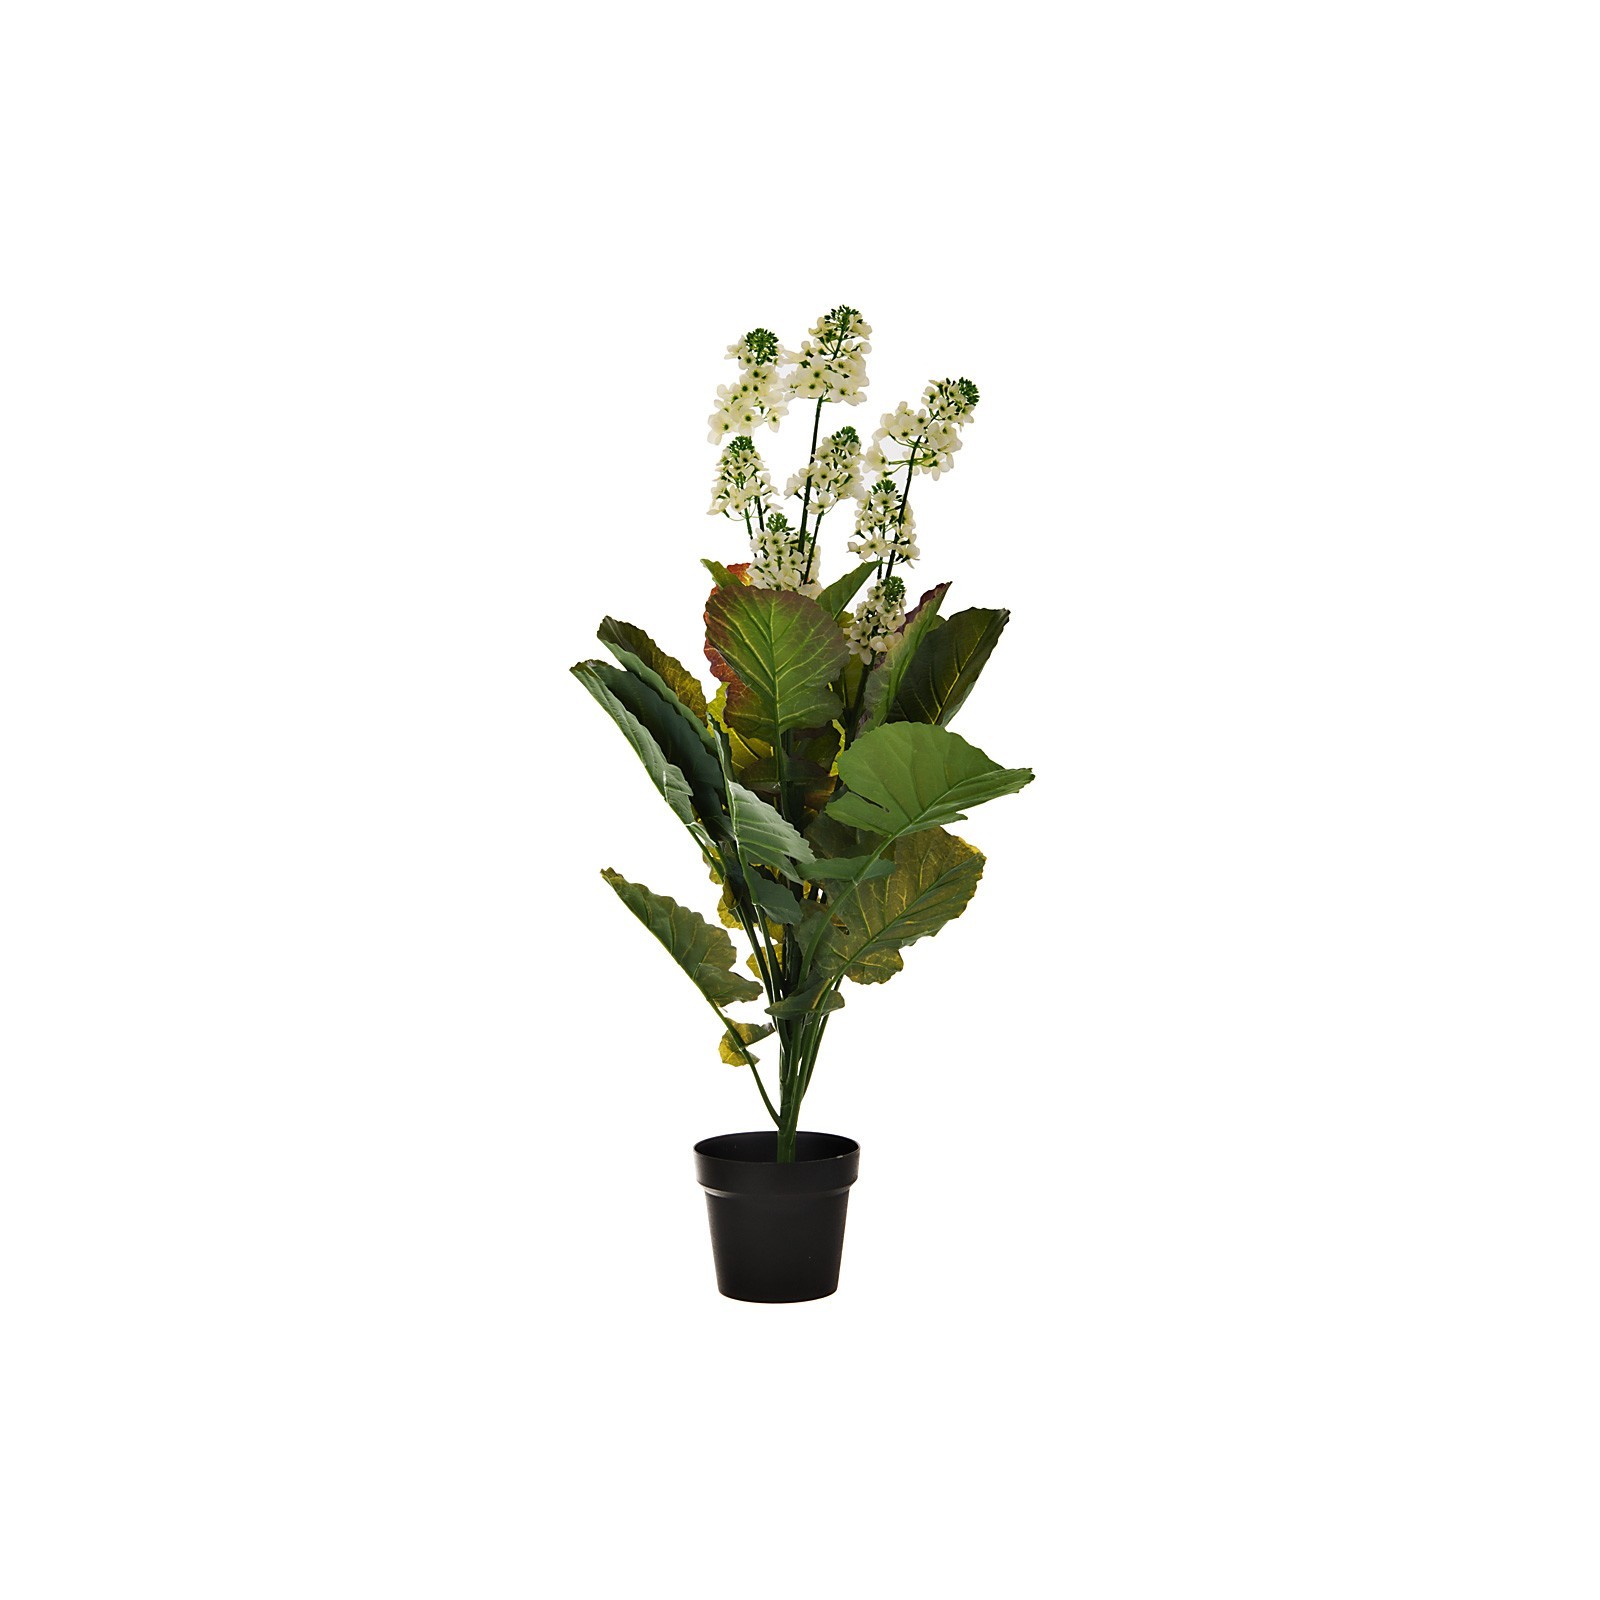 Planta artificial con maceta Flor Blanca plástico / hierro Haus